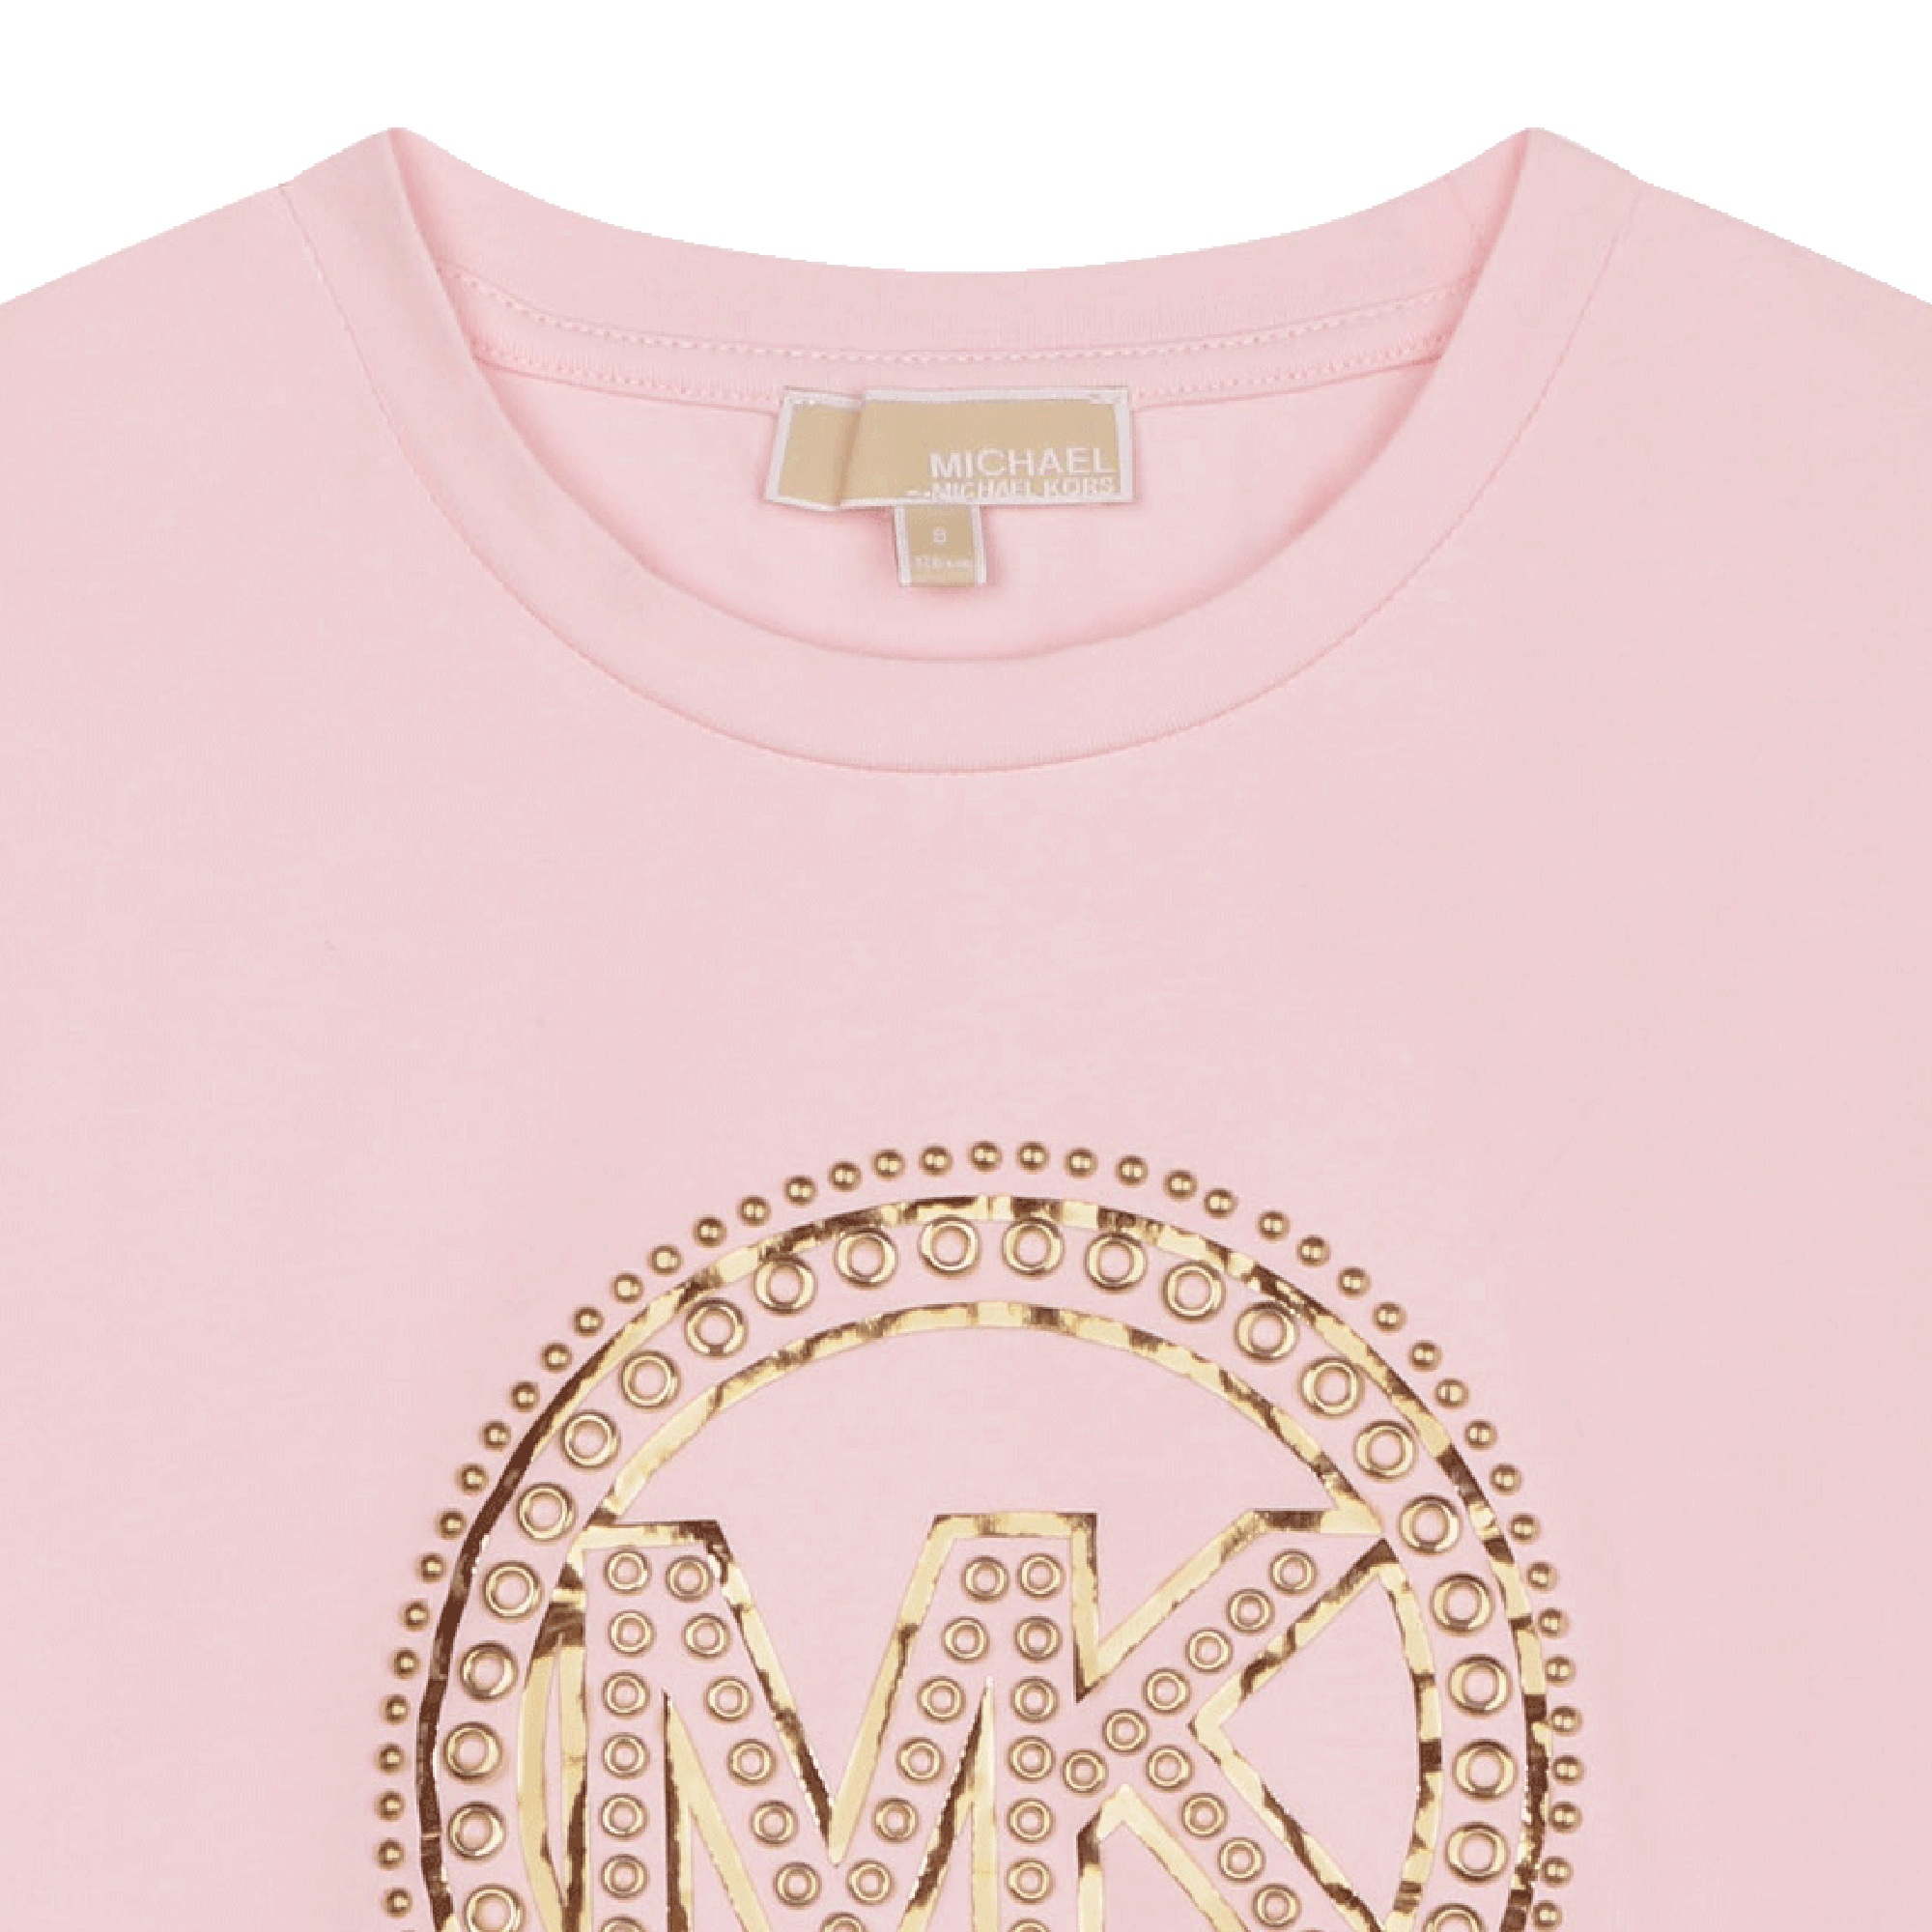 Long-sleeved studded T-shirt MICHAEL KORS for GIRL